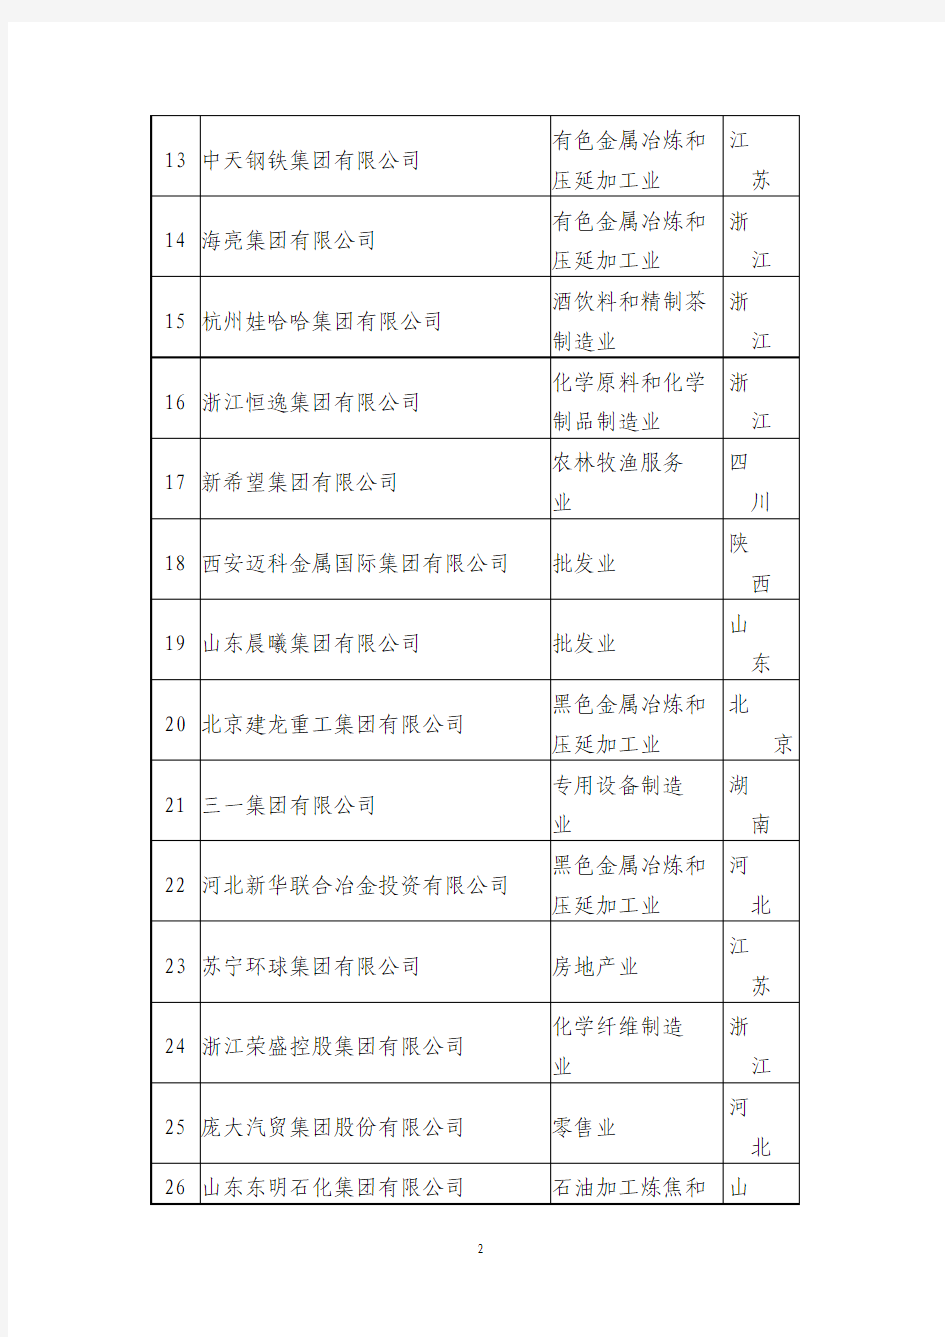 2014中国民营500强企业名单